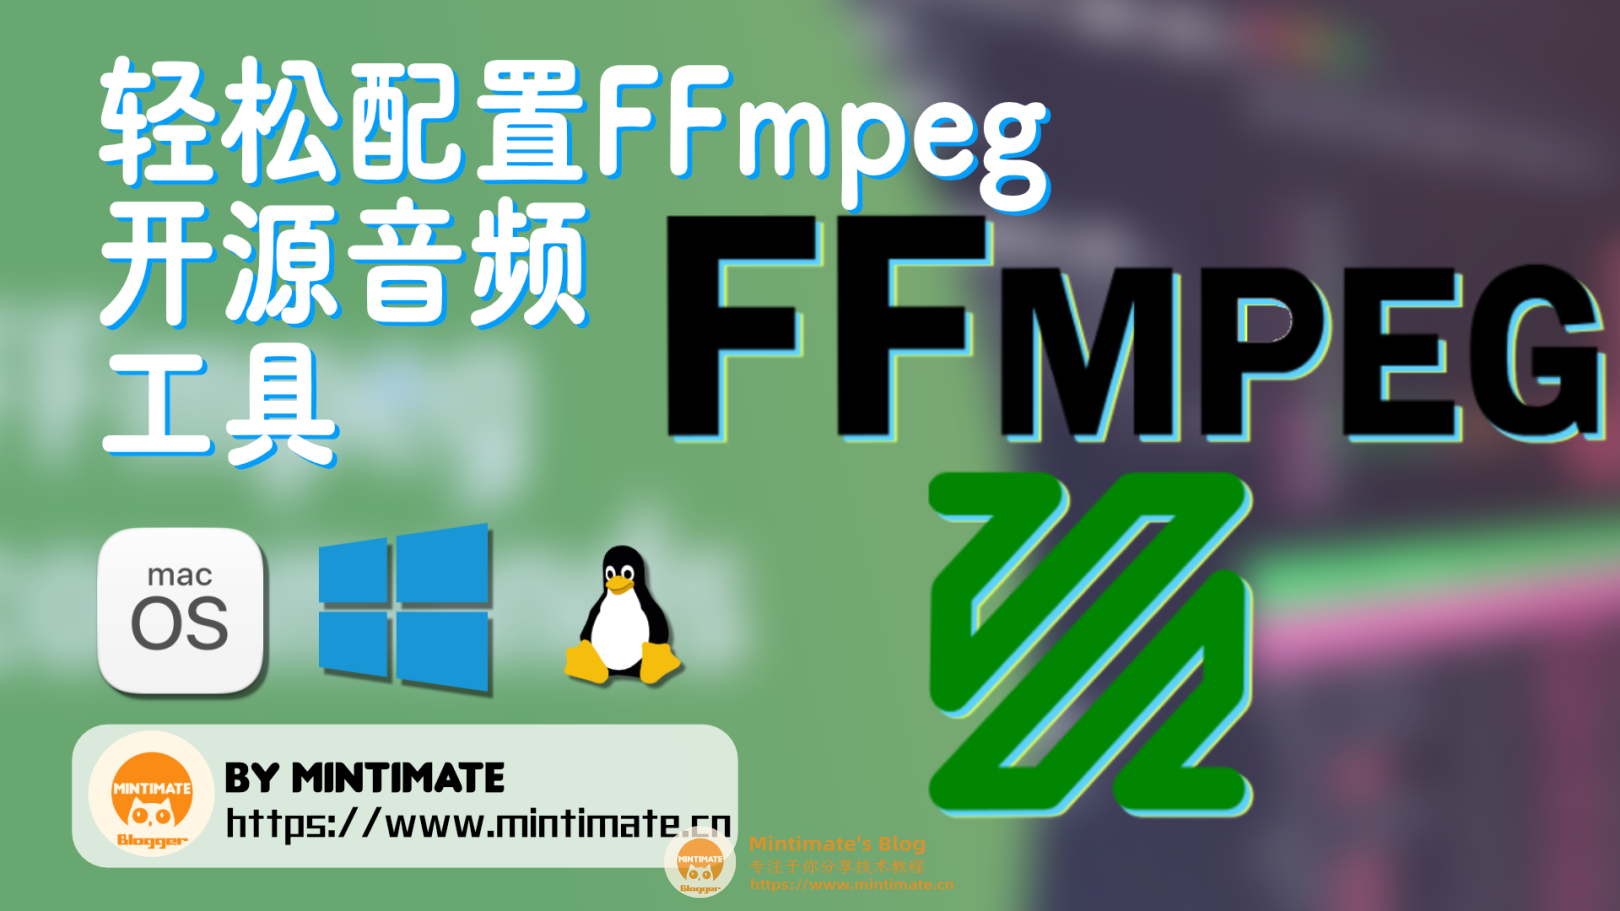 在Linux/Mac/Windows上配置FFmpeg开源音频工具，轻松完成视频转码、音频混合等操作